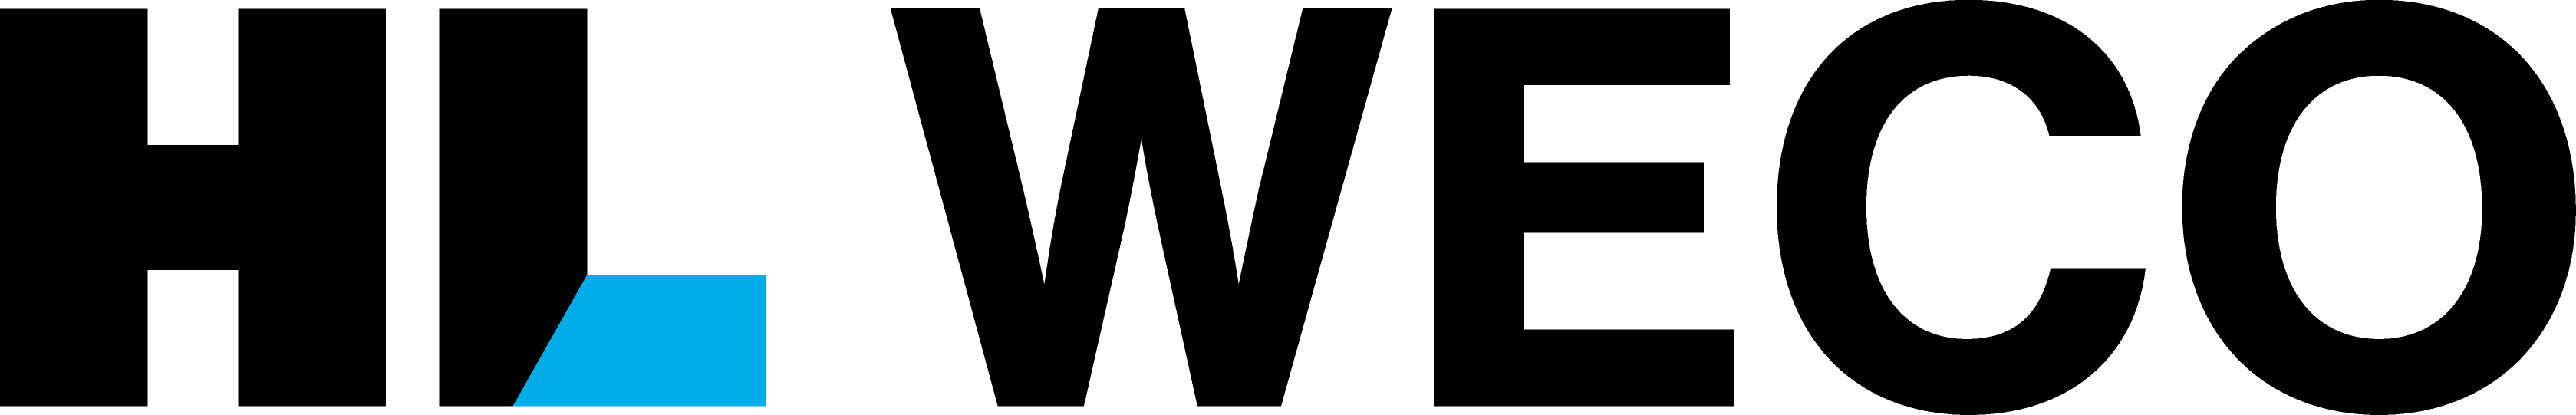 한라의 계열사 (주)에이치엘위코의 로고